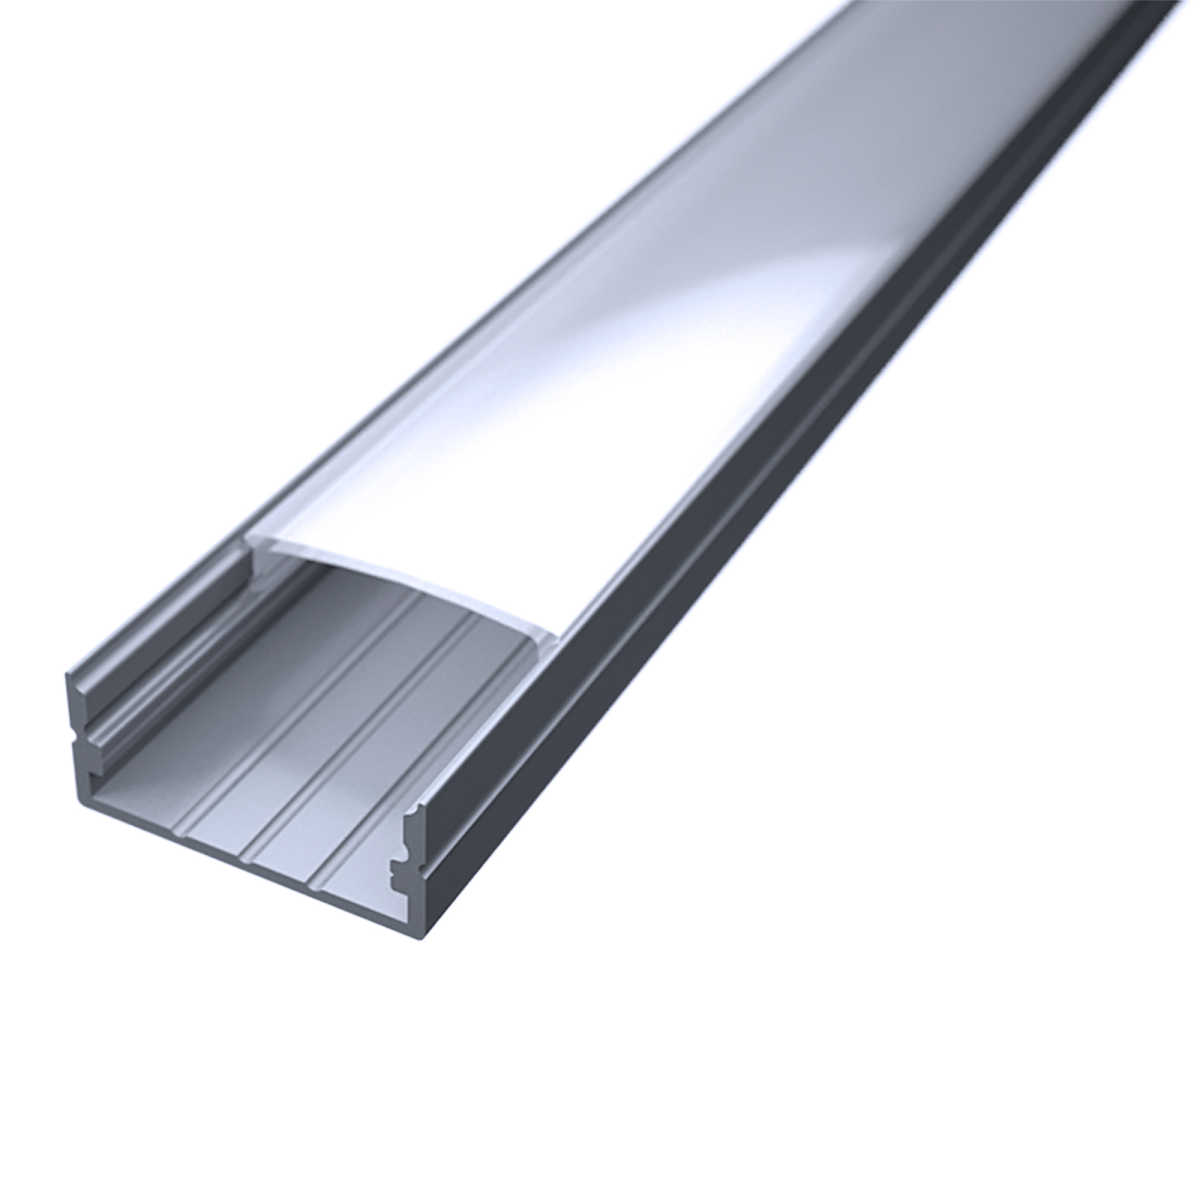 LED Flachprofil "Slim-Line max" | Abdeckung diffus | Zuschnitt auf 101cm |